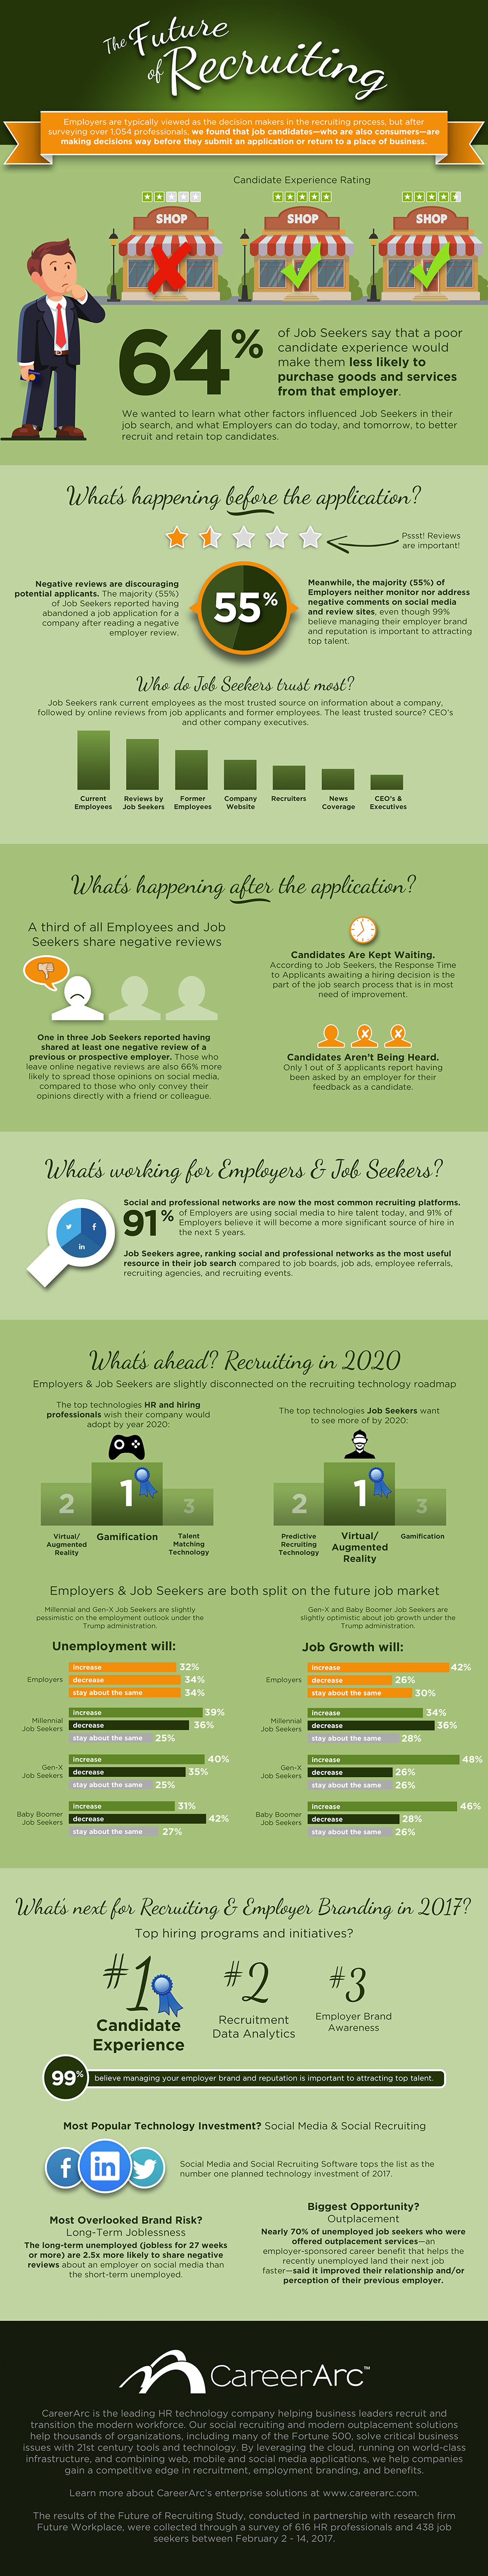 CareerArc Future of Recruiting Infographic